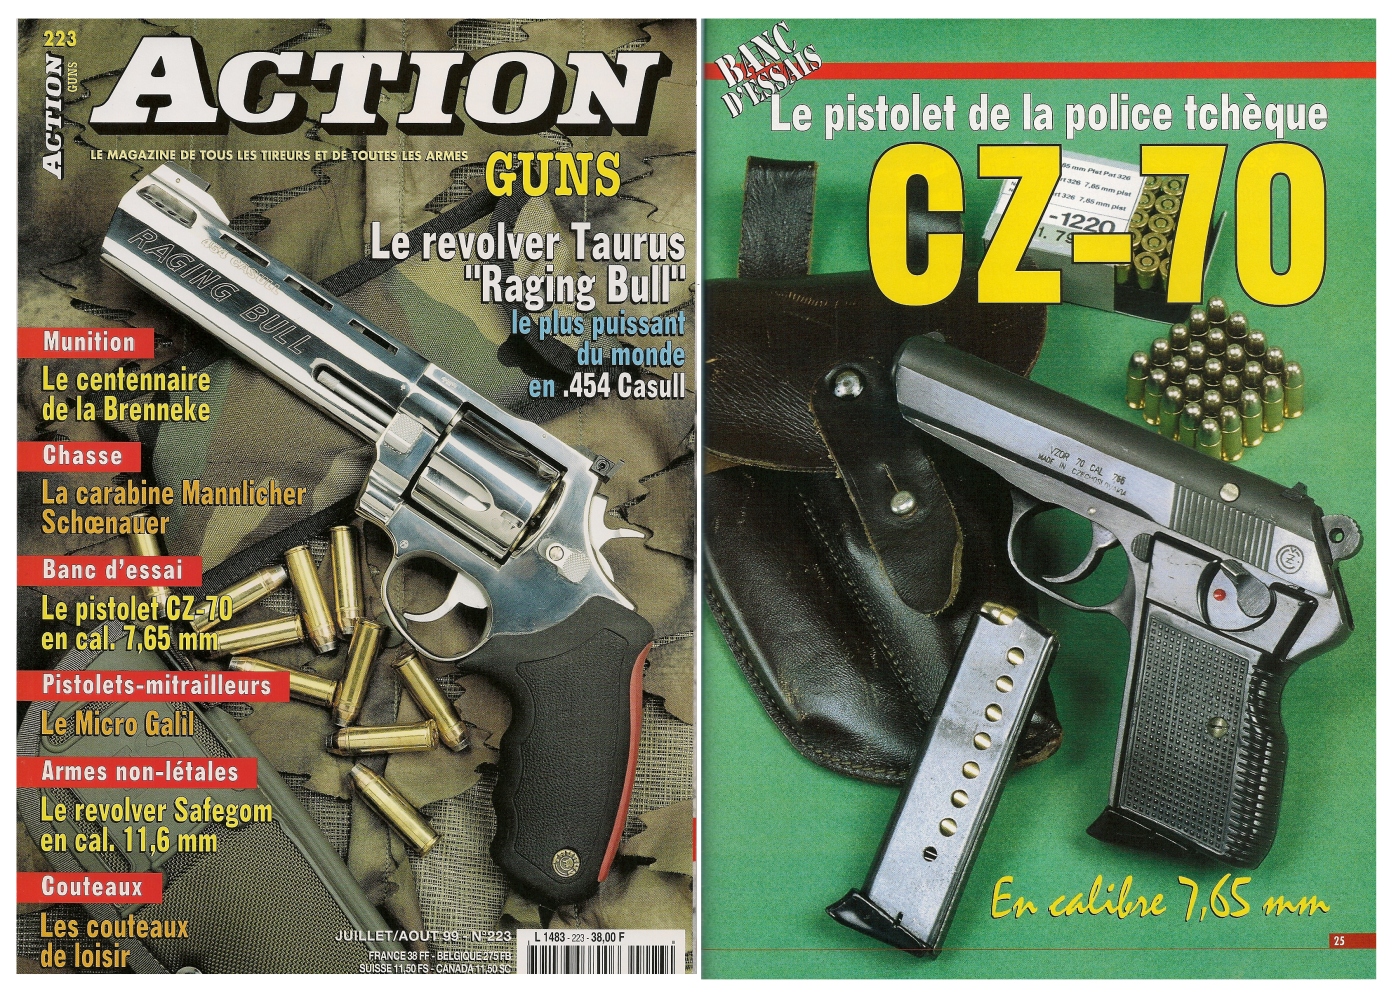 Le banc d’essai du pistolet CZ modèle 70 a été publié sur 5 pages dans le n°223 (juillet/août 1999) du magazine Action Guns.